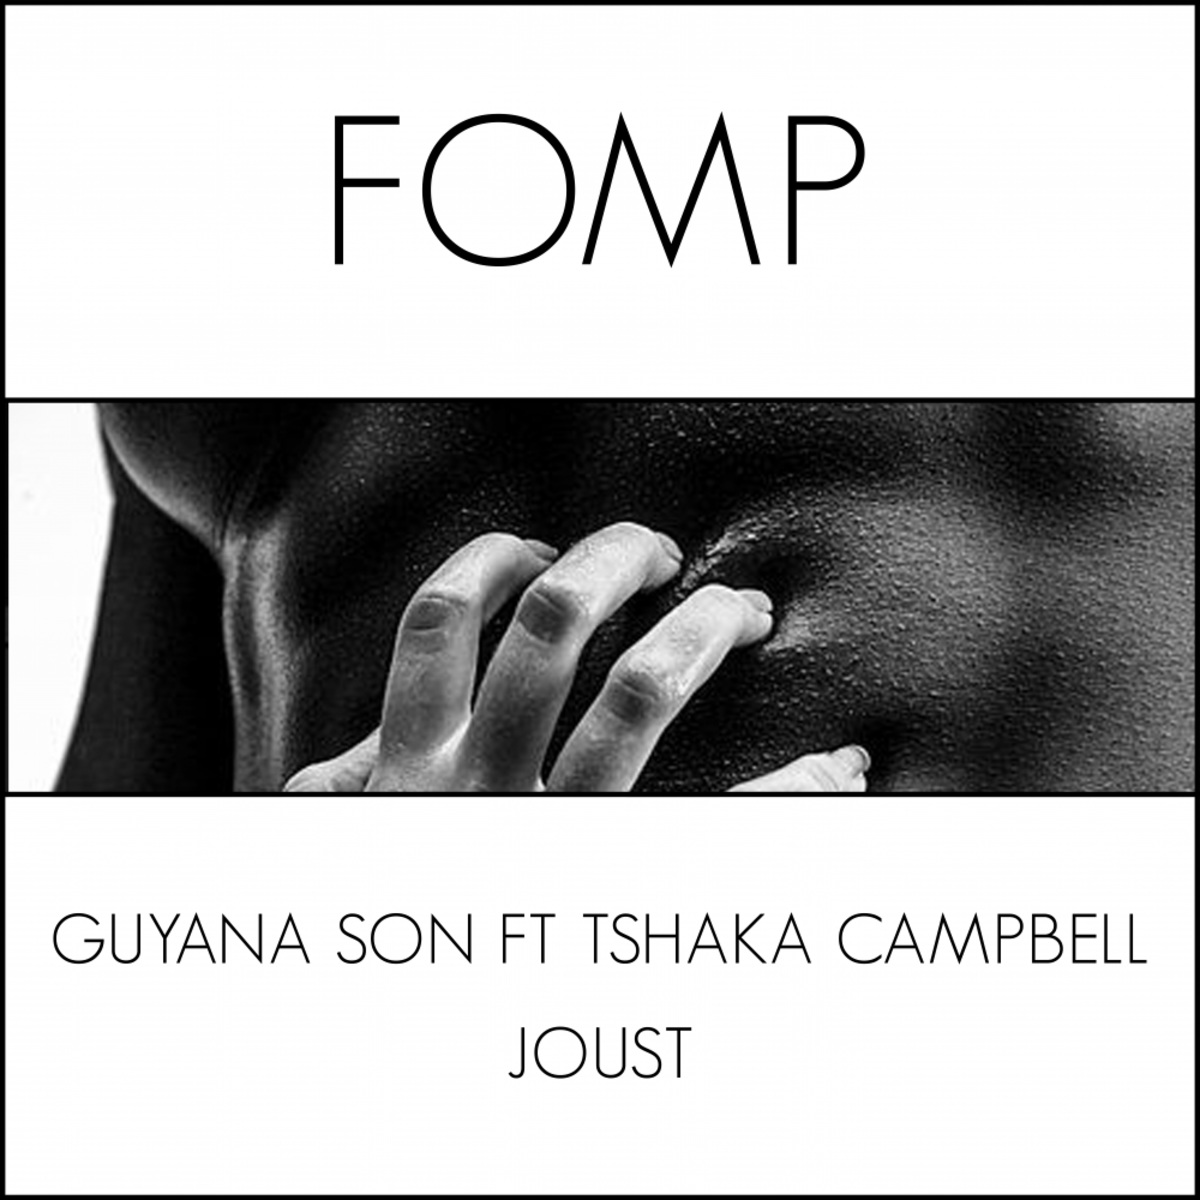 Guyana Son ft Tshaka Campbell - Joust / FOMP